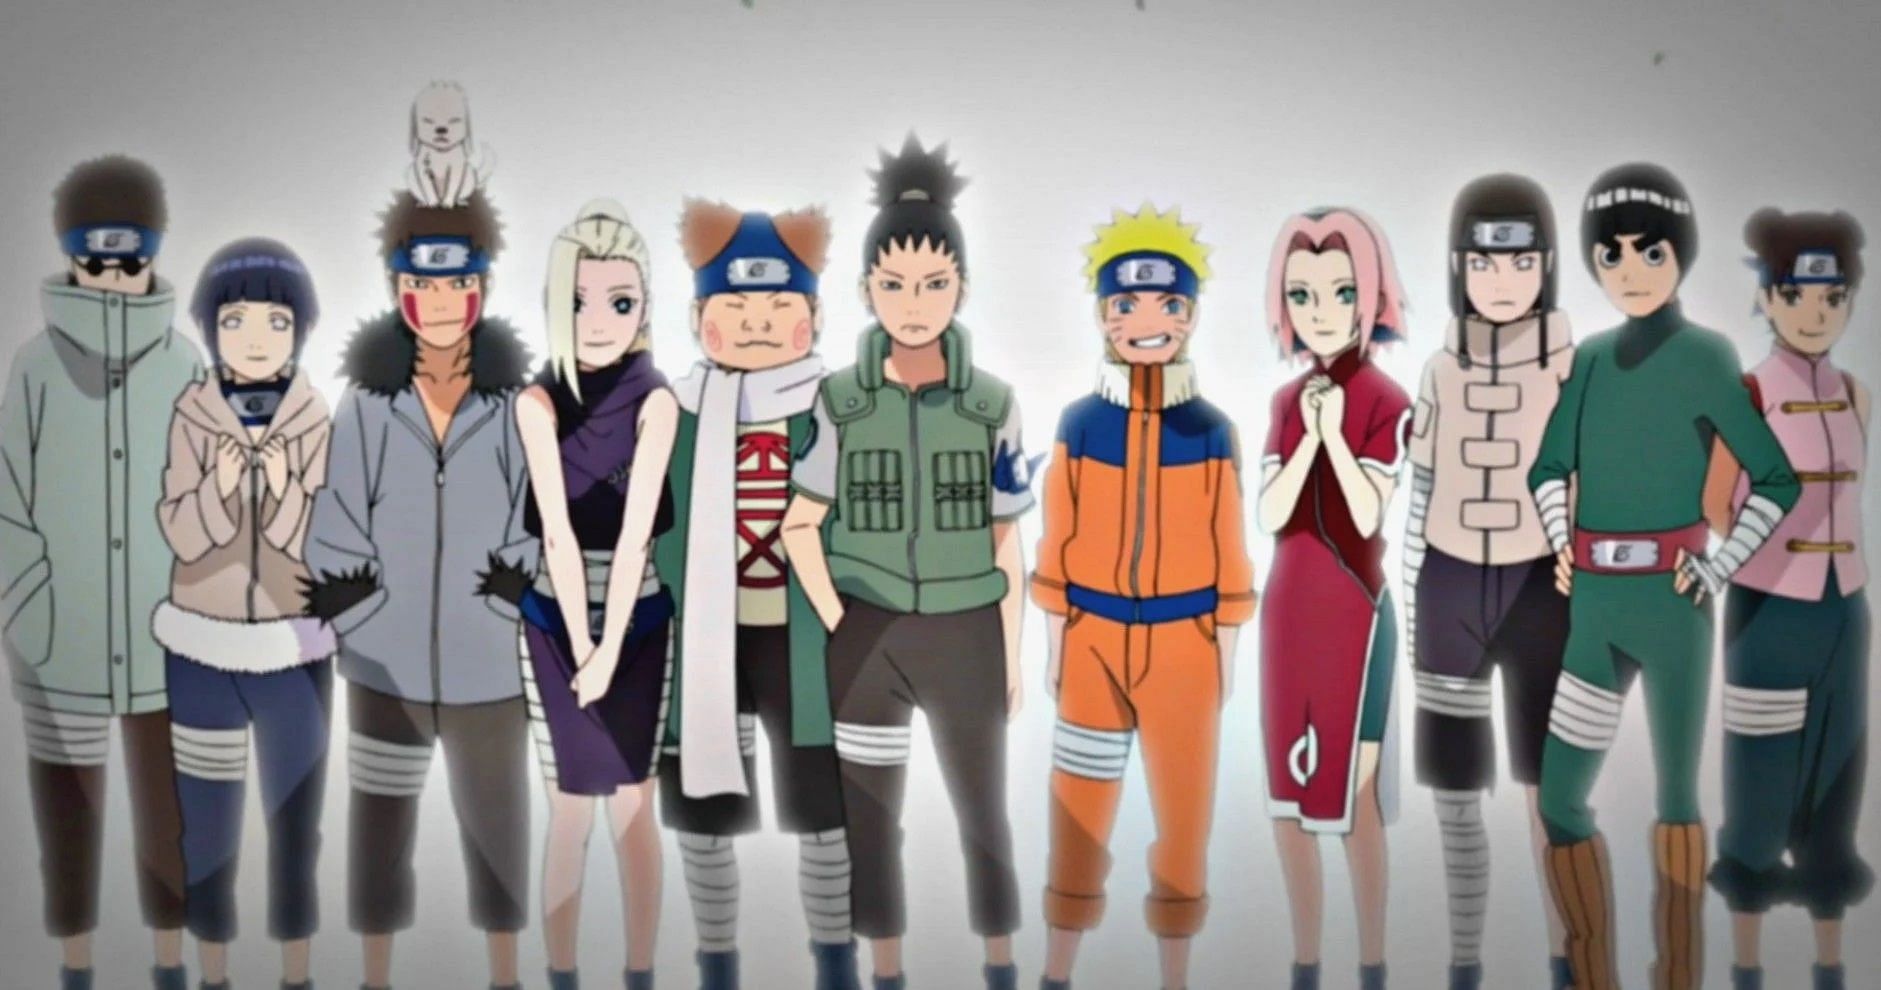 Naruto Gang, Shikamaru, Choji, Sakura, and many more., Image via Sportskeeda.